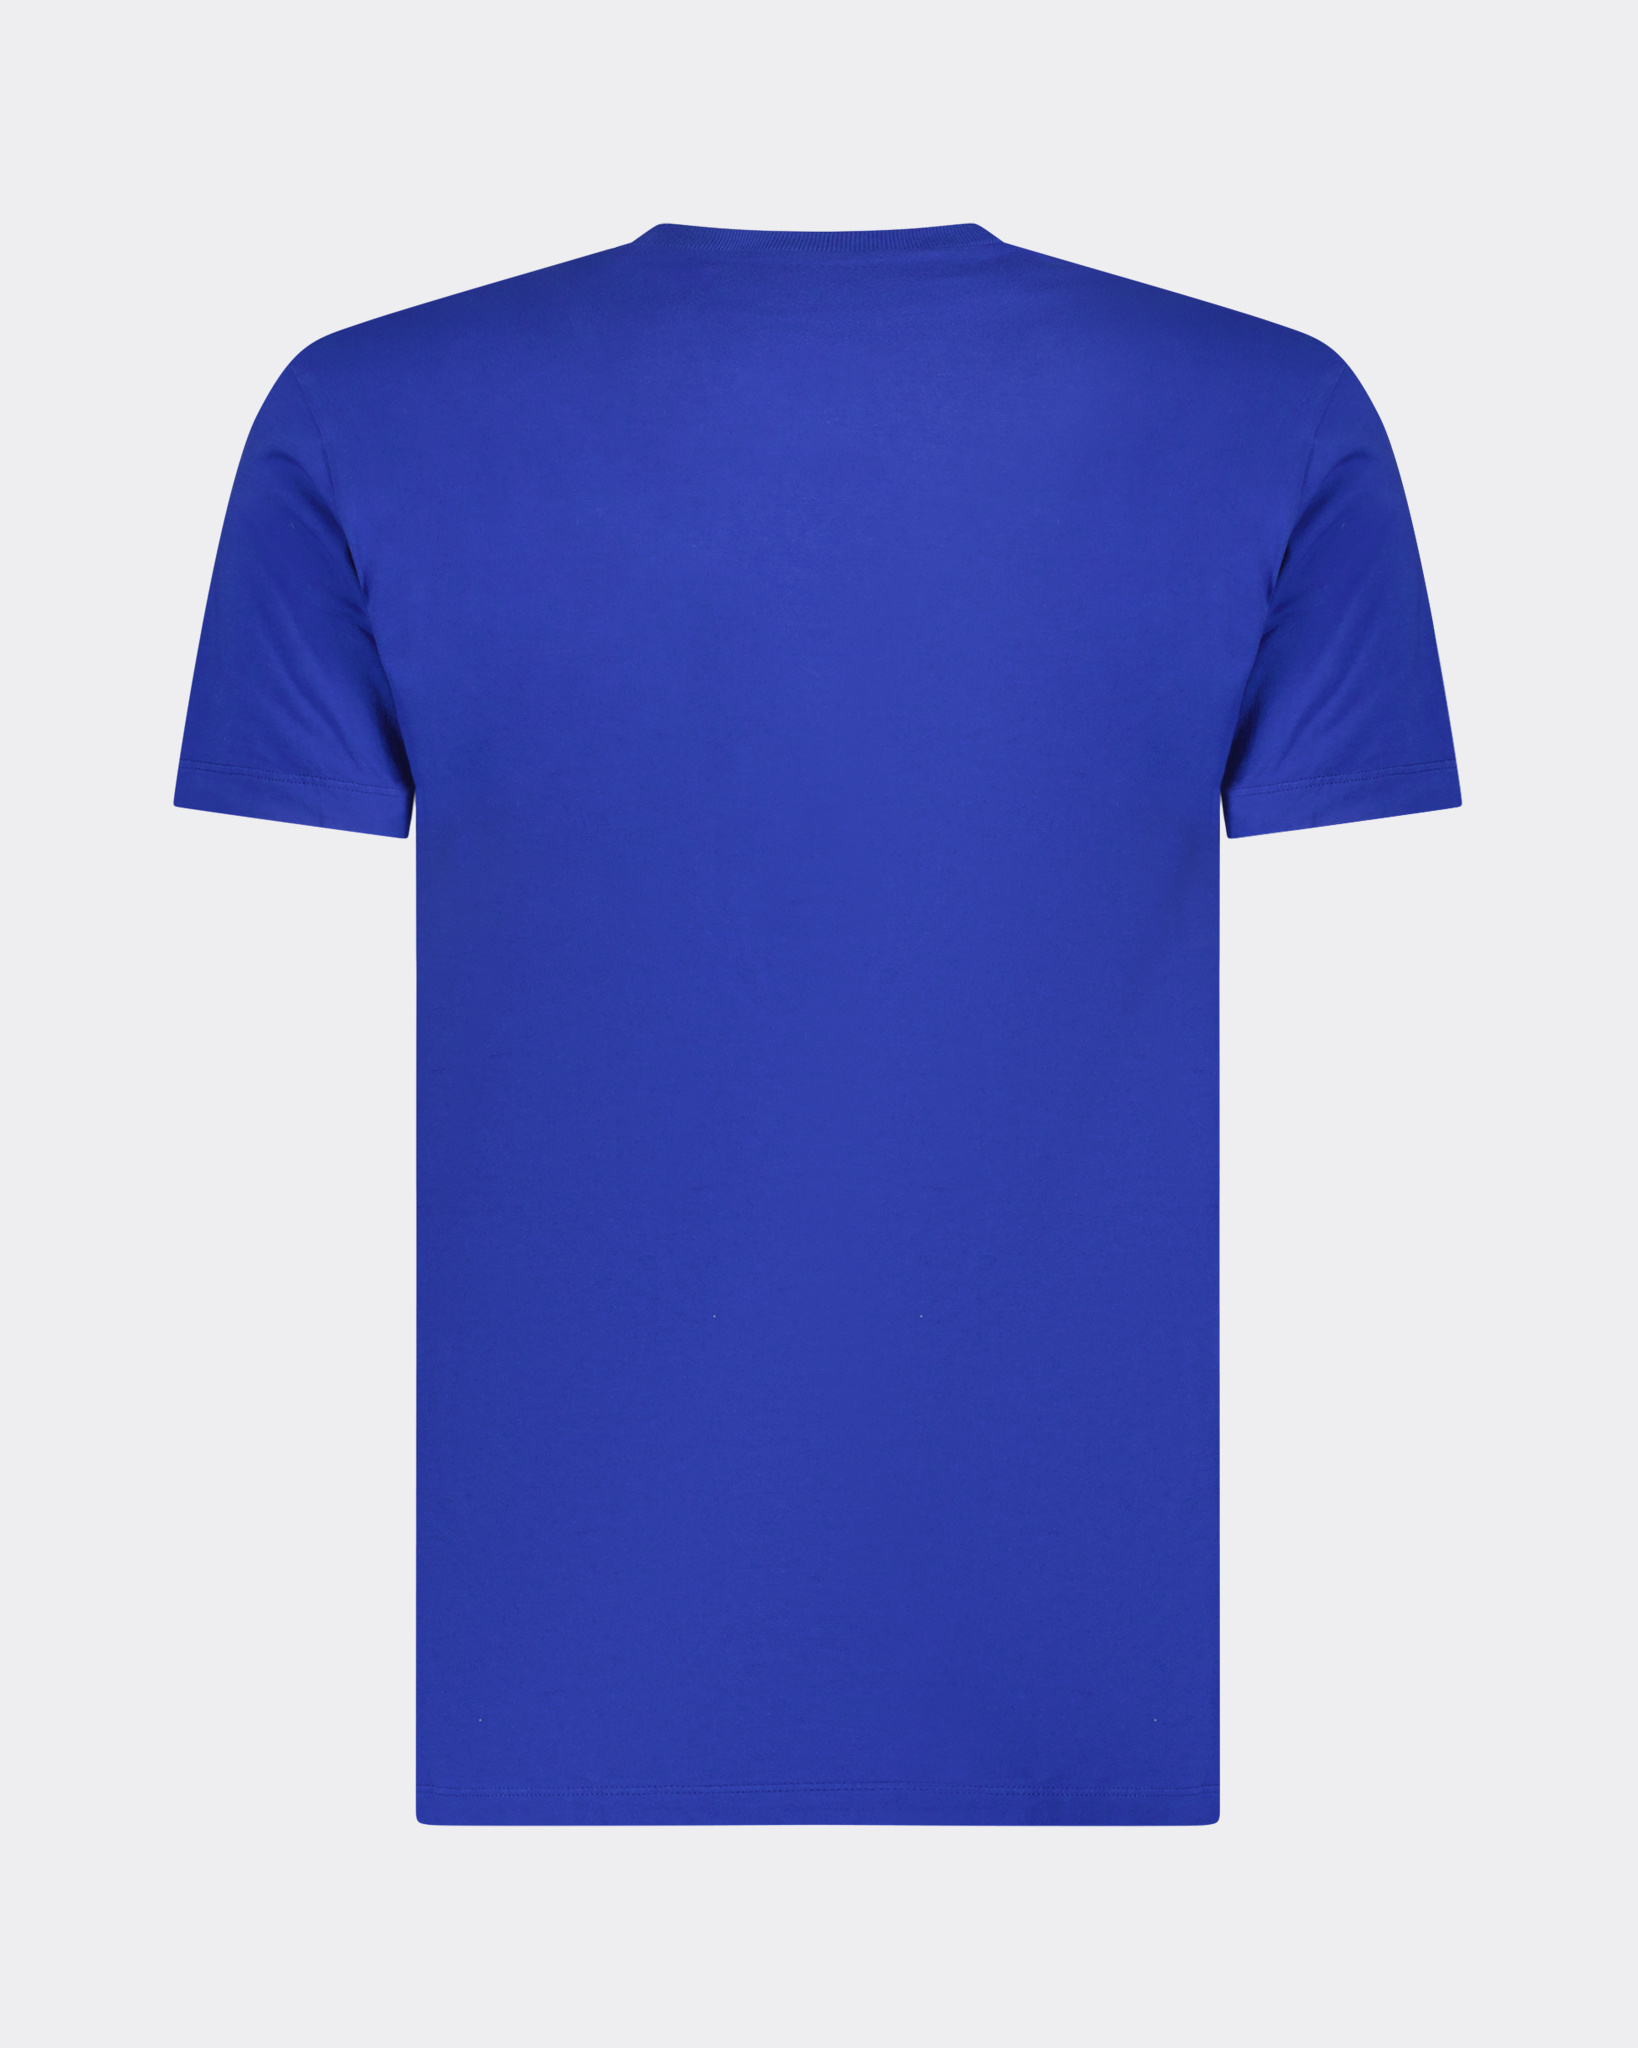 tellen onvergeeflijk faillissement Cool T-shirt Blauw - Beachim